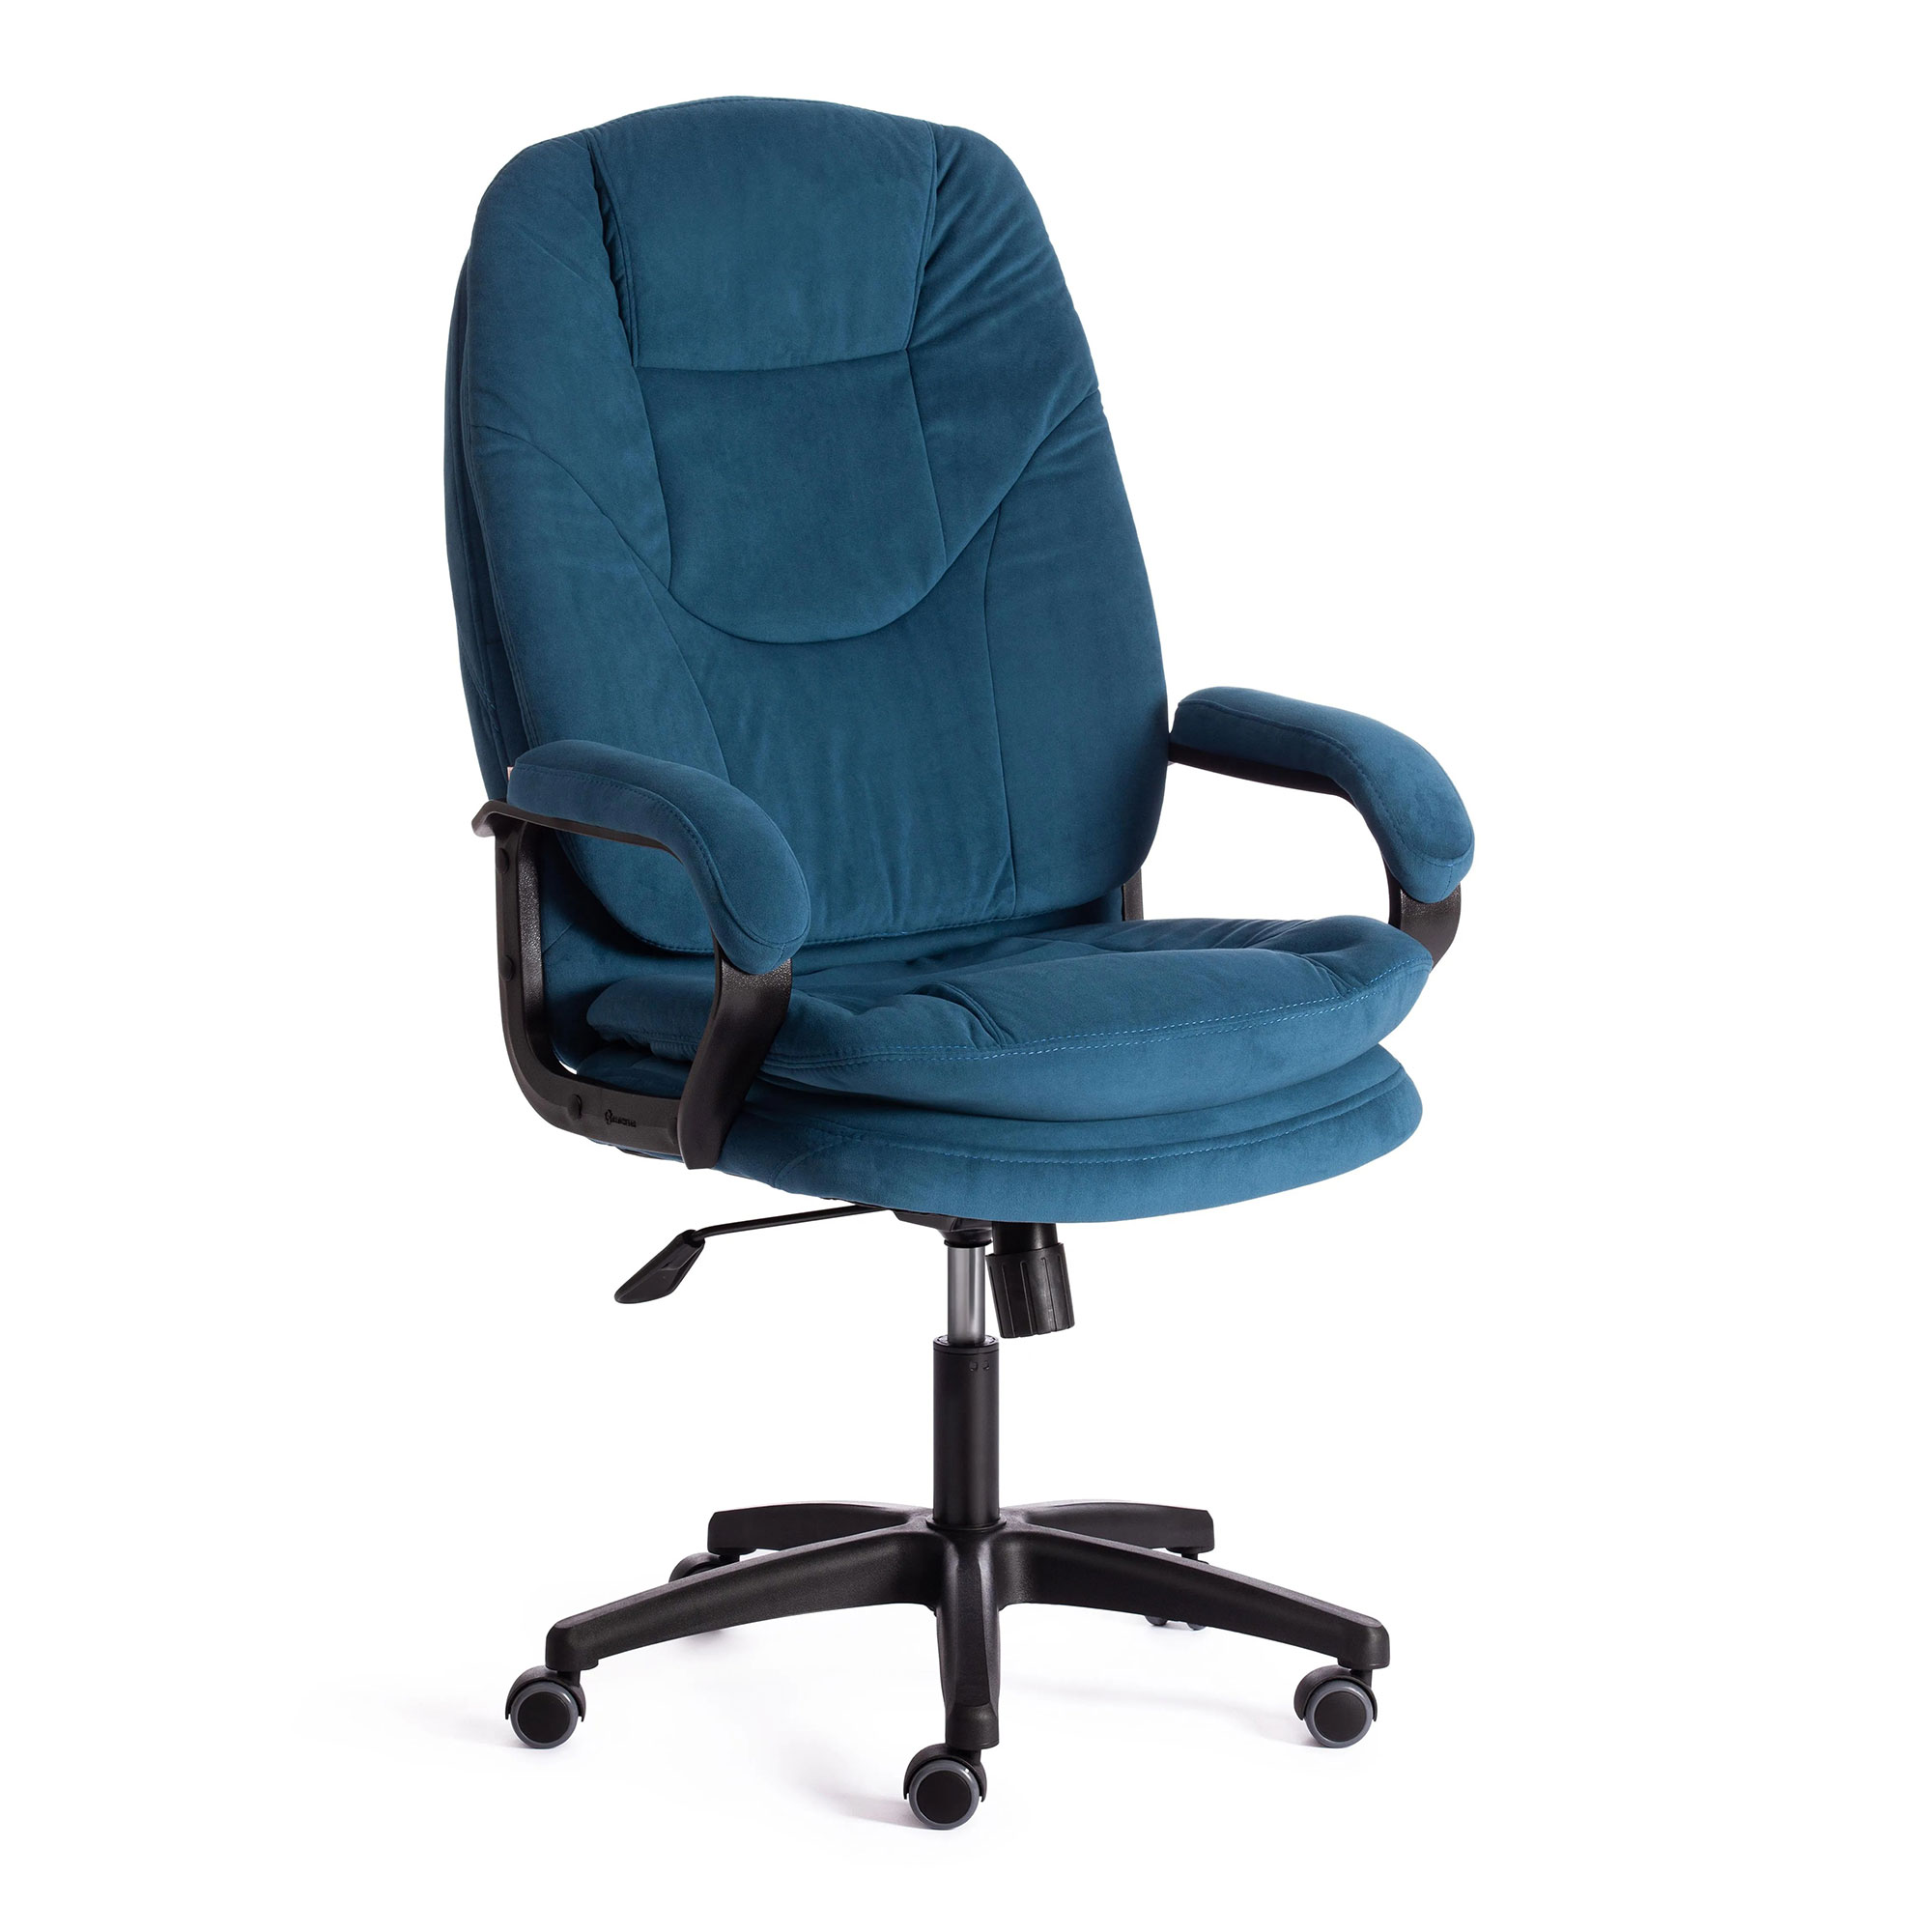 Компьютерное кресло TC Comfort синее 66х46х133 см (19387) набор посуды zeidan 8 предметов z 50814 comfort